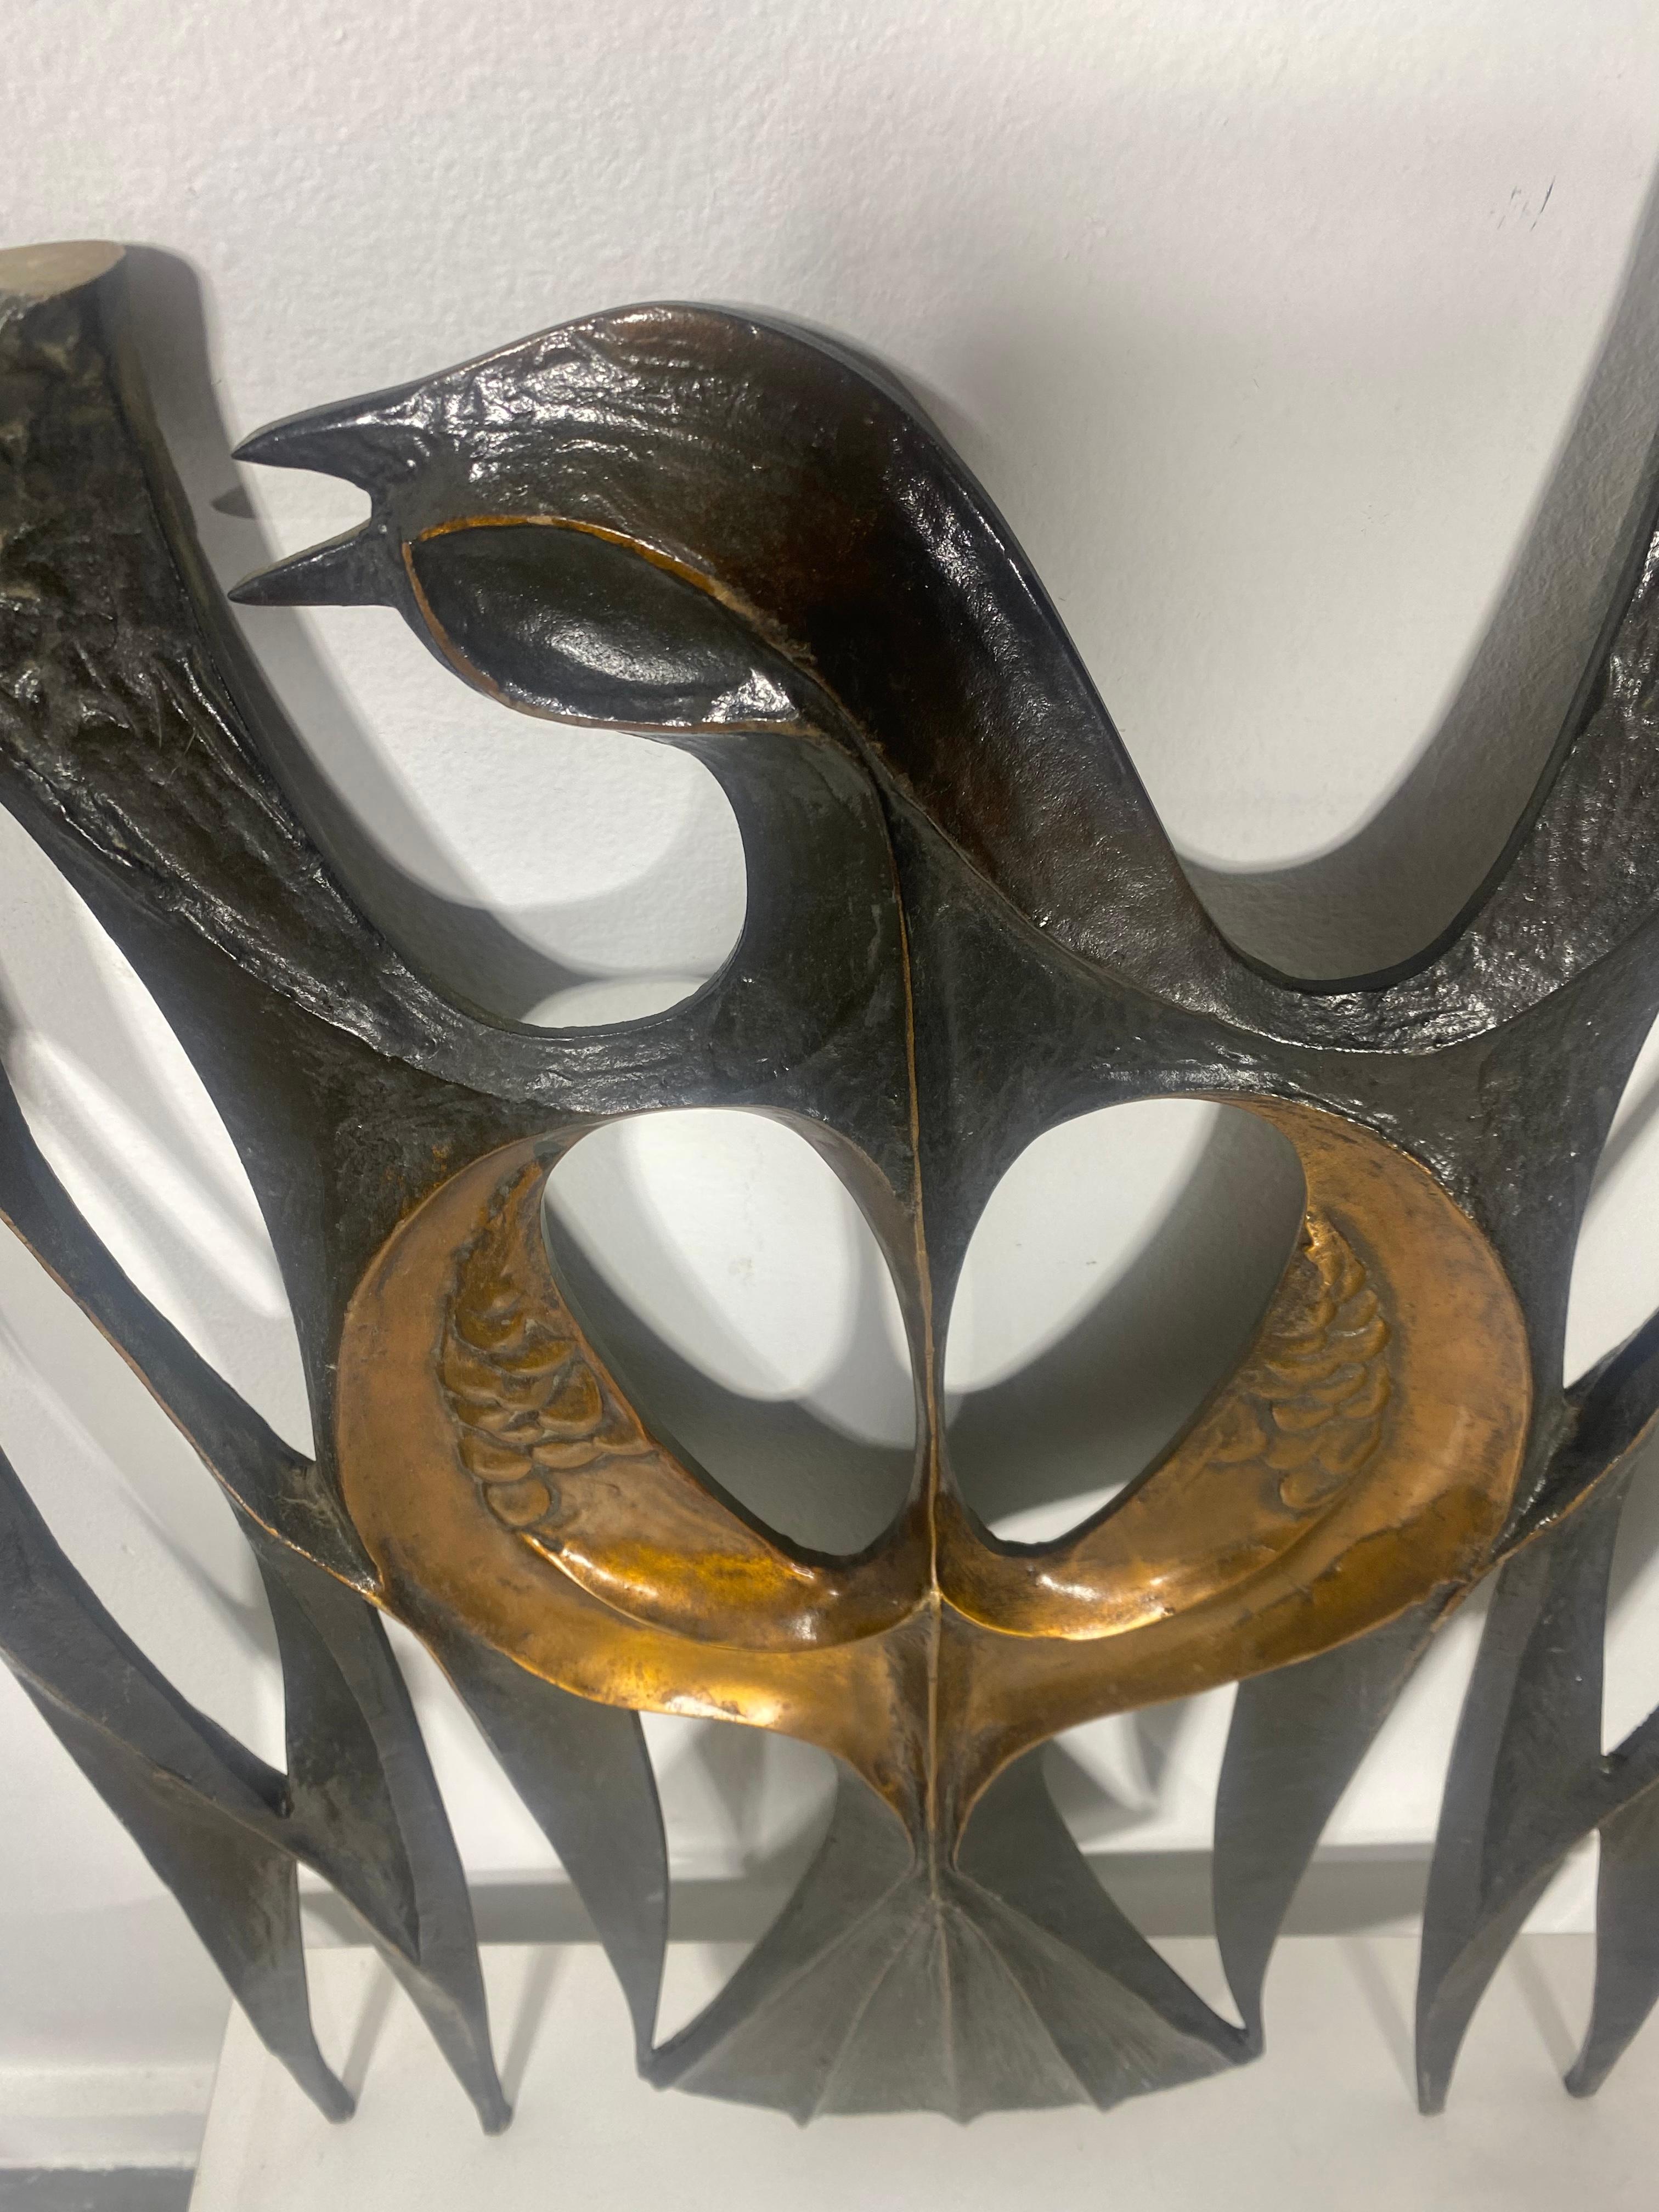  Sculpture en bronze coulé super stylisée représentant une colombe. Récupérée dans une église du centre ville de Buffalo New York, très probablement une partie d'une balustrade, d'un autel... Détails étonnants... Certainement créée par un artiste